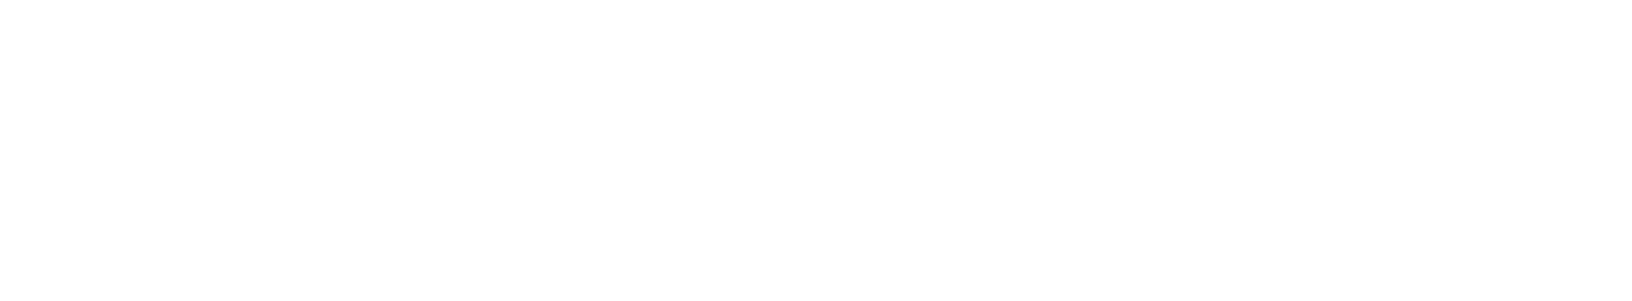 Women in Insurance UK Logo